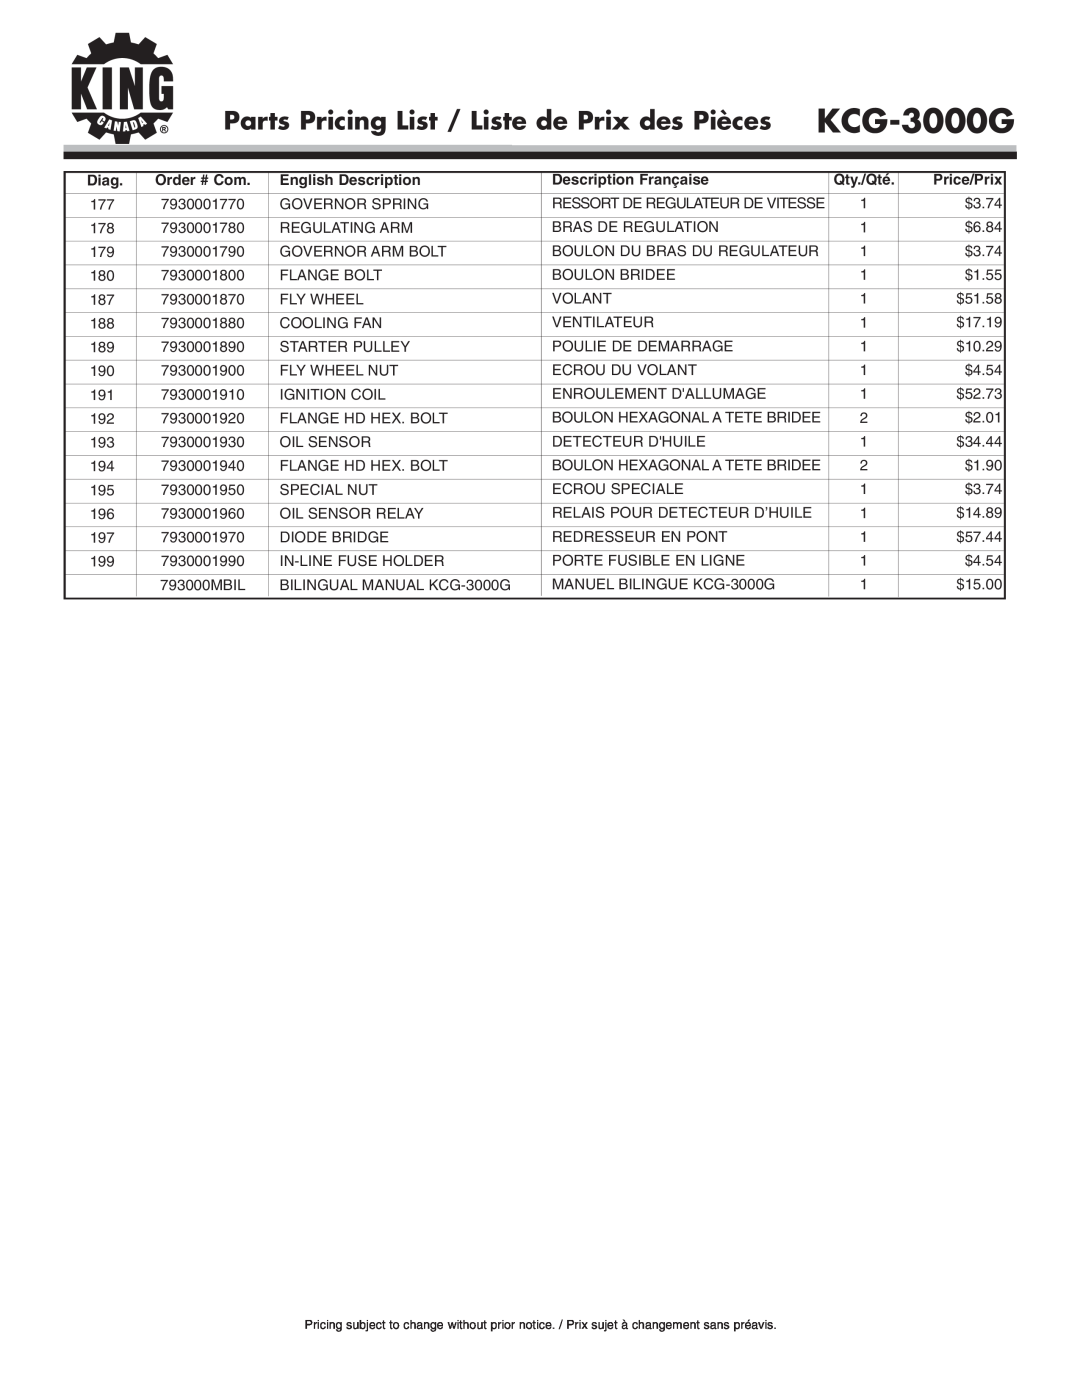 King Canada KCG-3000G Parts Pricing List / Liste de Prix des Pièces, Diag, Order # Com, English Description, Qty./Qté 